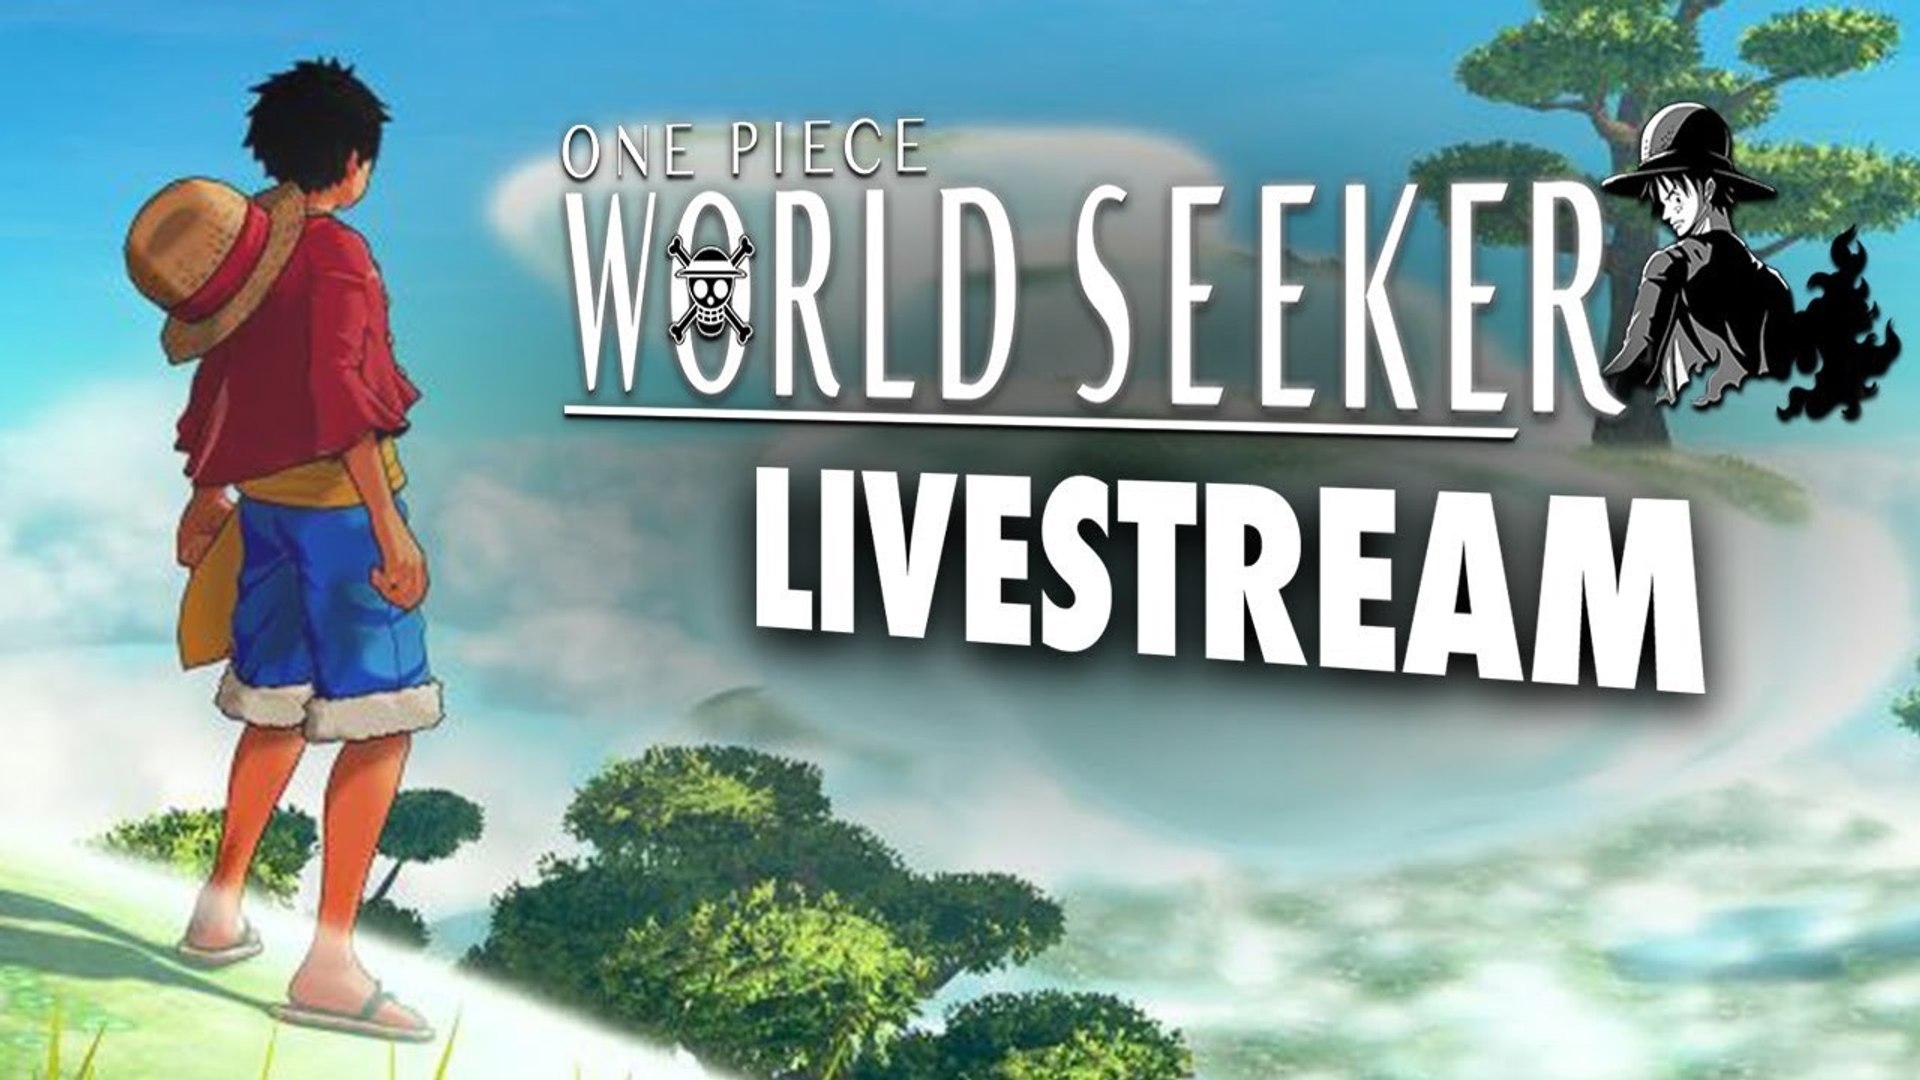 One Piece Episode 896 Watch Online Live Stream